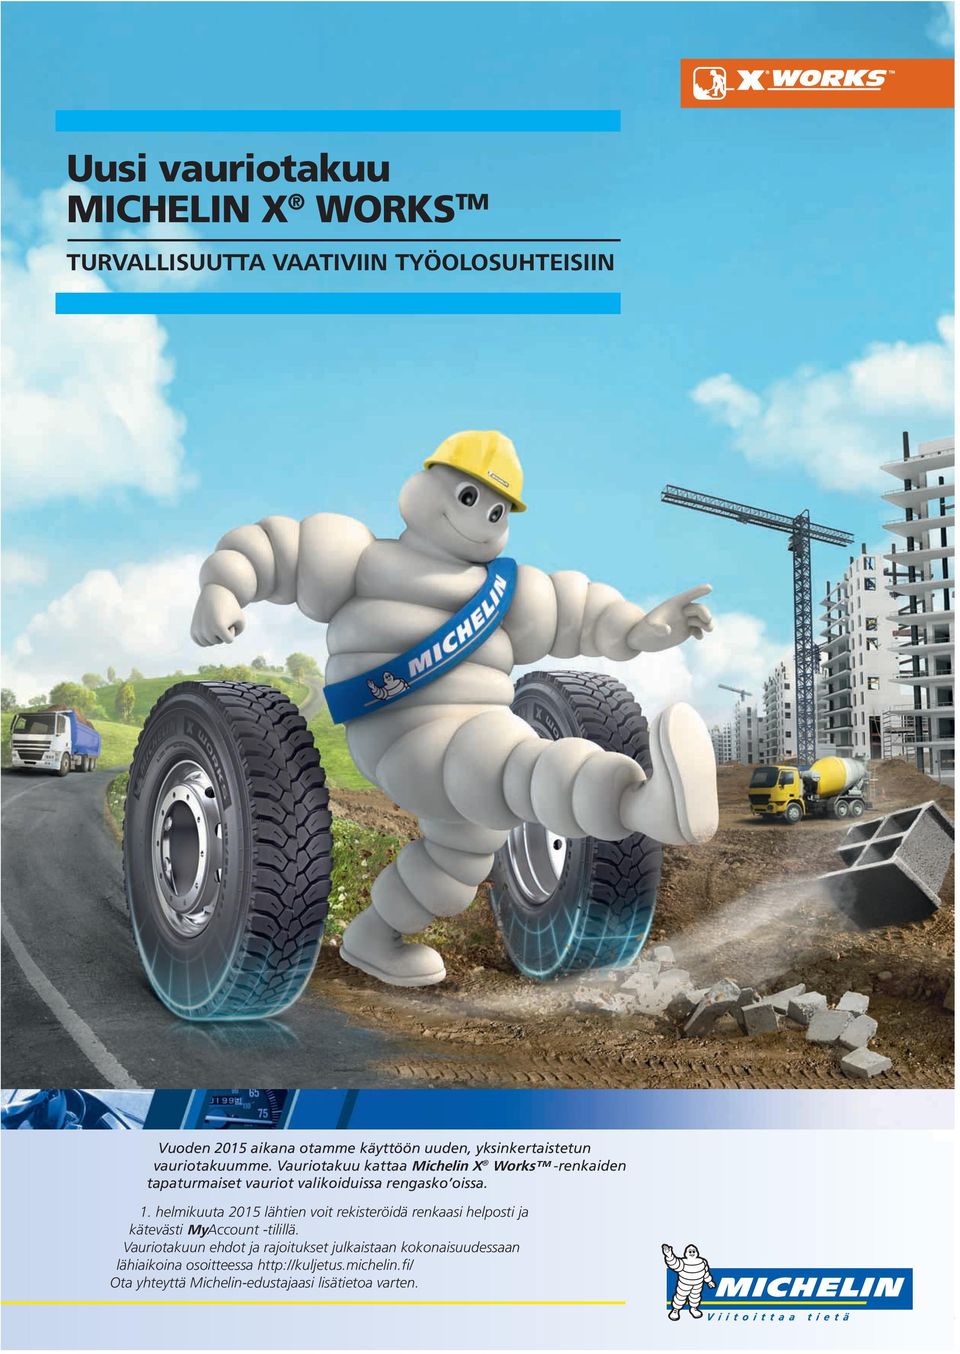 Vauriotakuu kattaa Michelin X Works -renkaiden tapaturmaiset vauriot valikoiduissa rengasko oissa. 1.